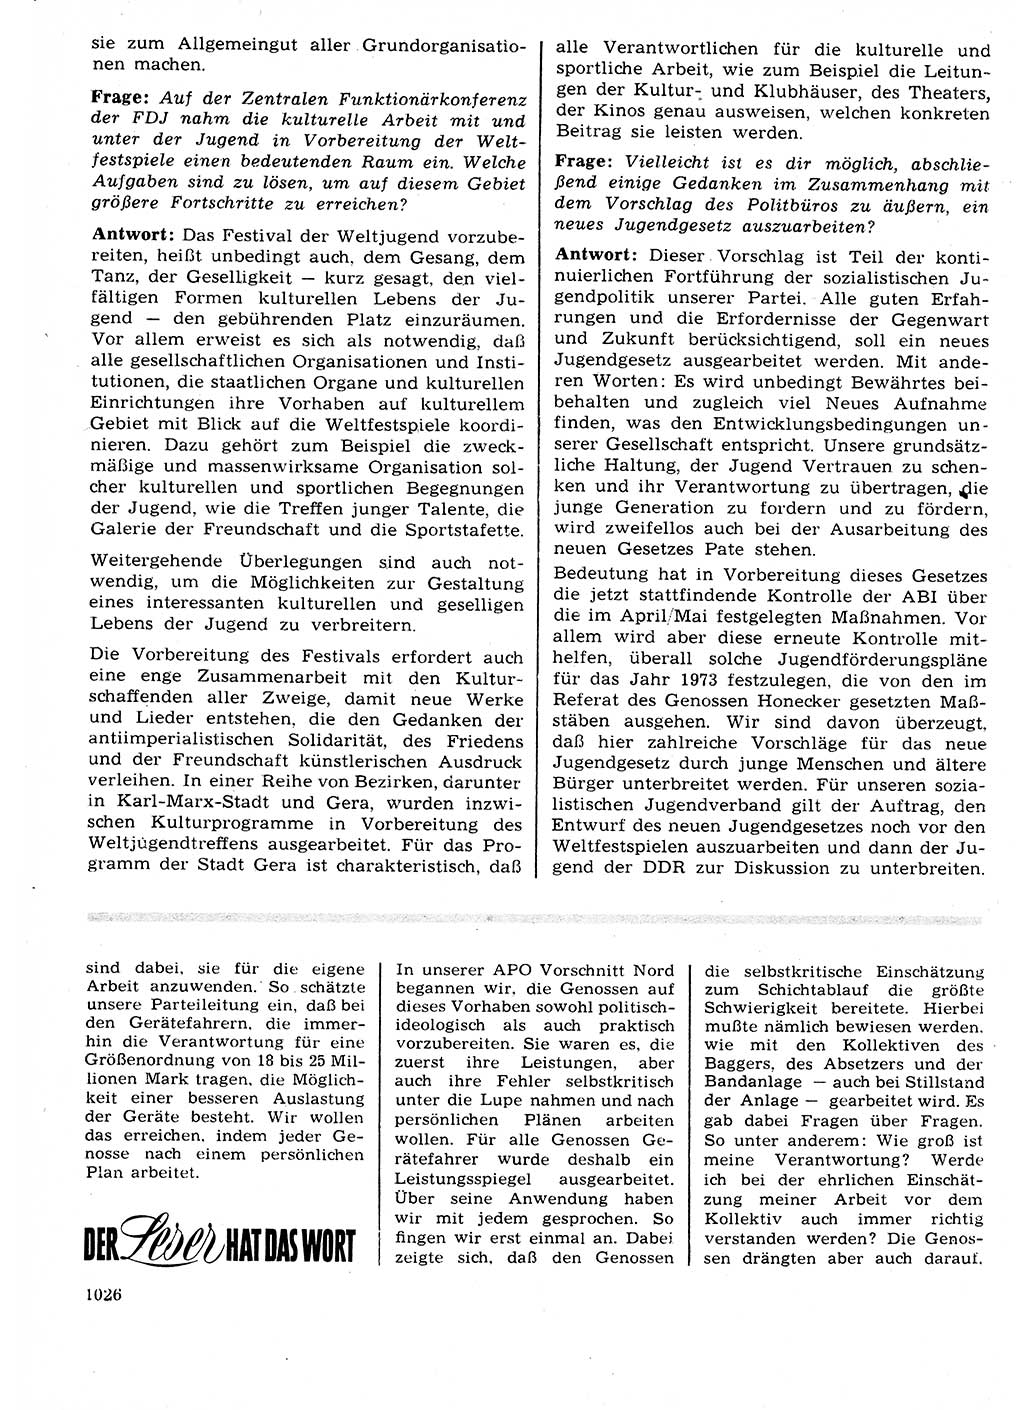 Neuer Weg (NW), Organ des Zentralkomitees (ZK) der SED (Sozialistische Einheitspartei Deutschlands) für Fragen des Parteilebens, 27. Jahrgang [Deutsche Demokratische Republik (DDR)] 1972, Seite 1026 (NW ZK SED DDR 1972, S. 1026)